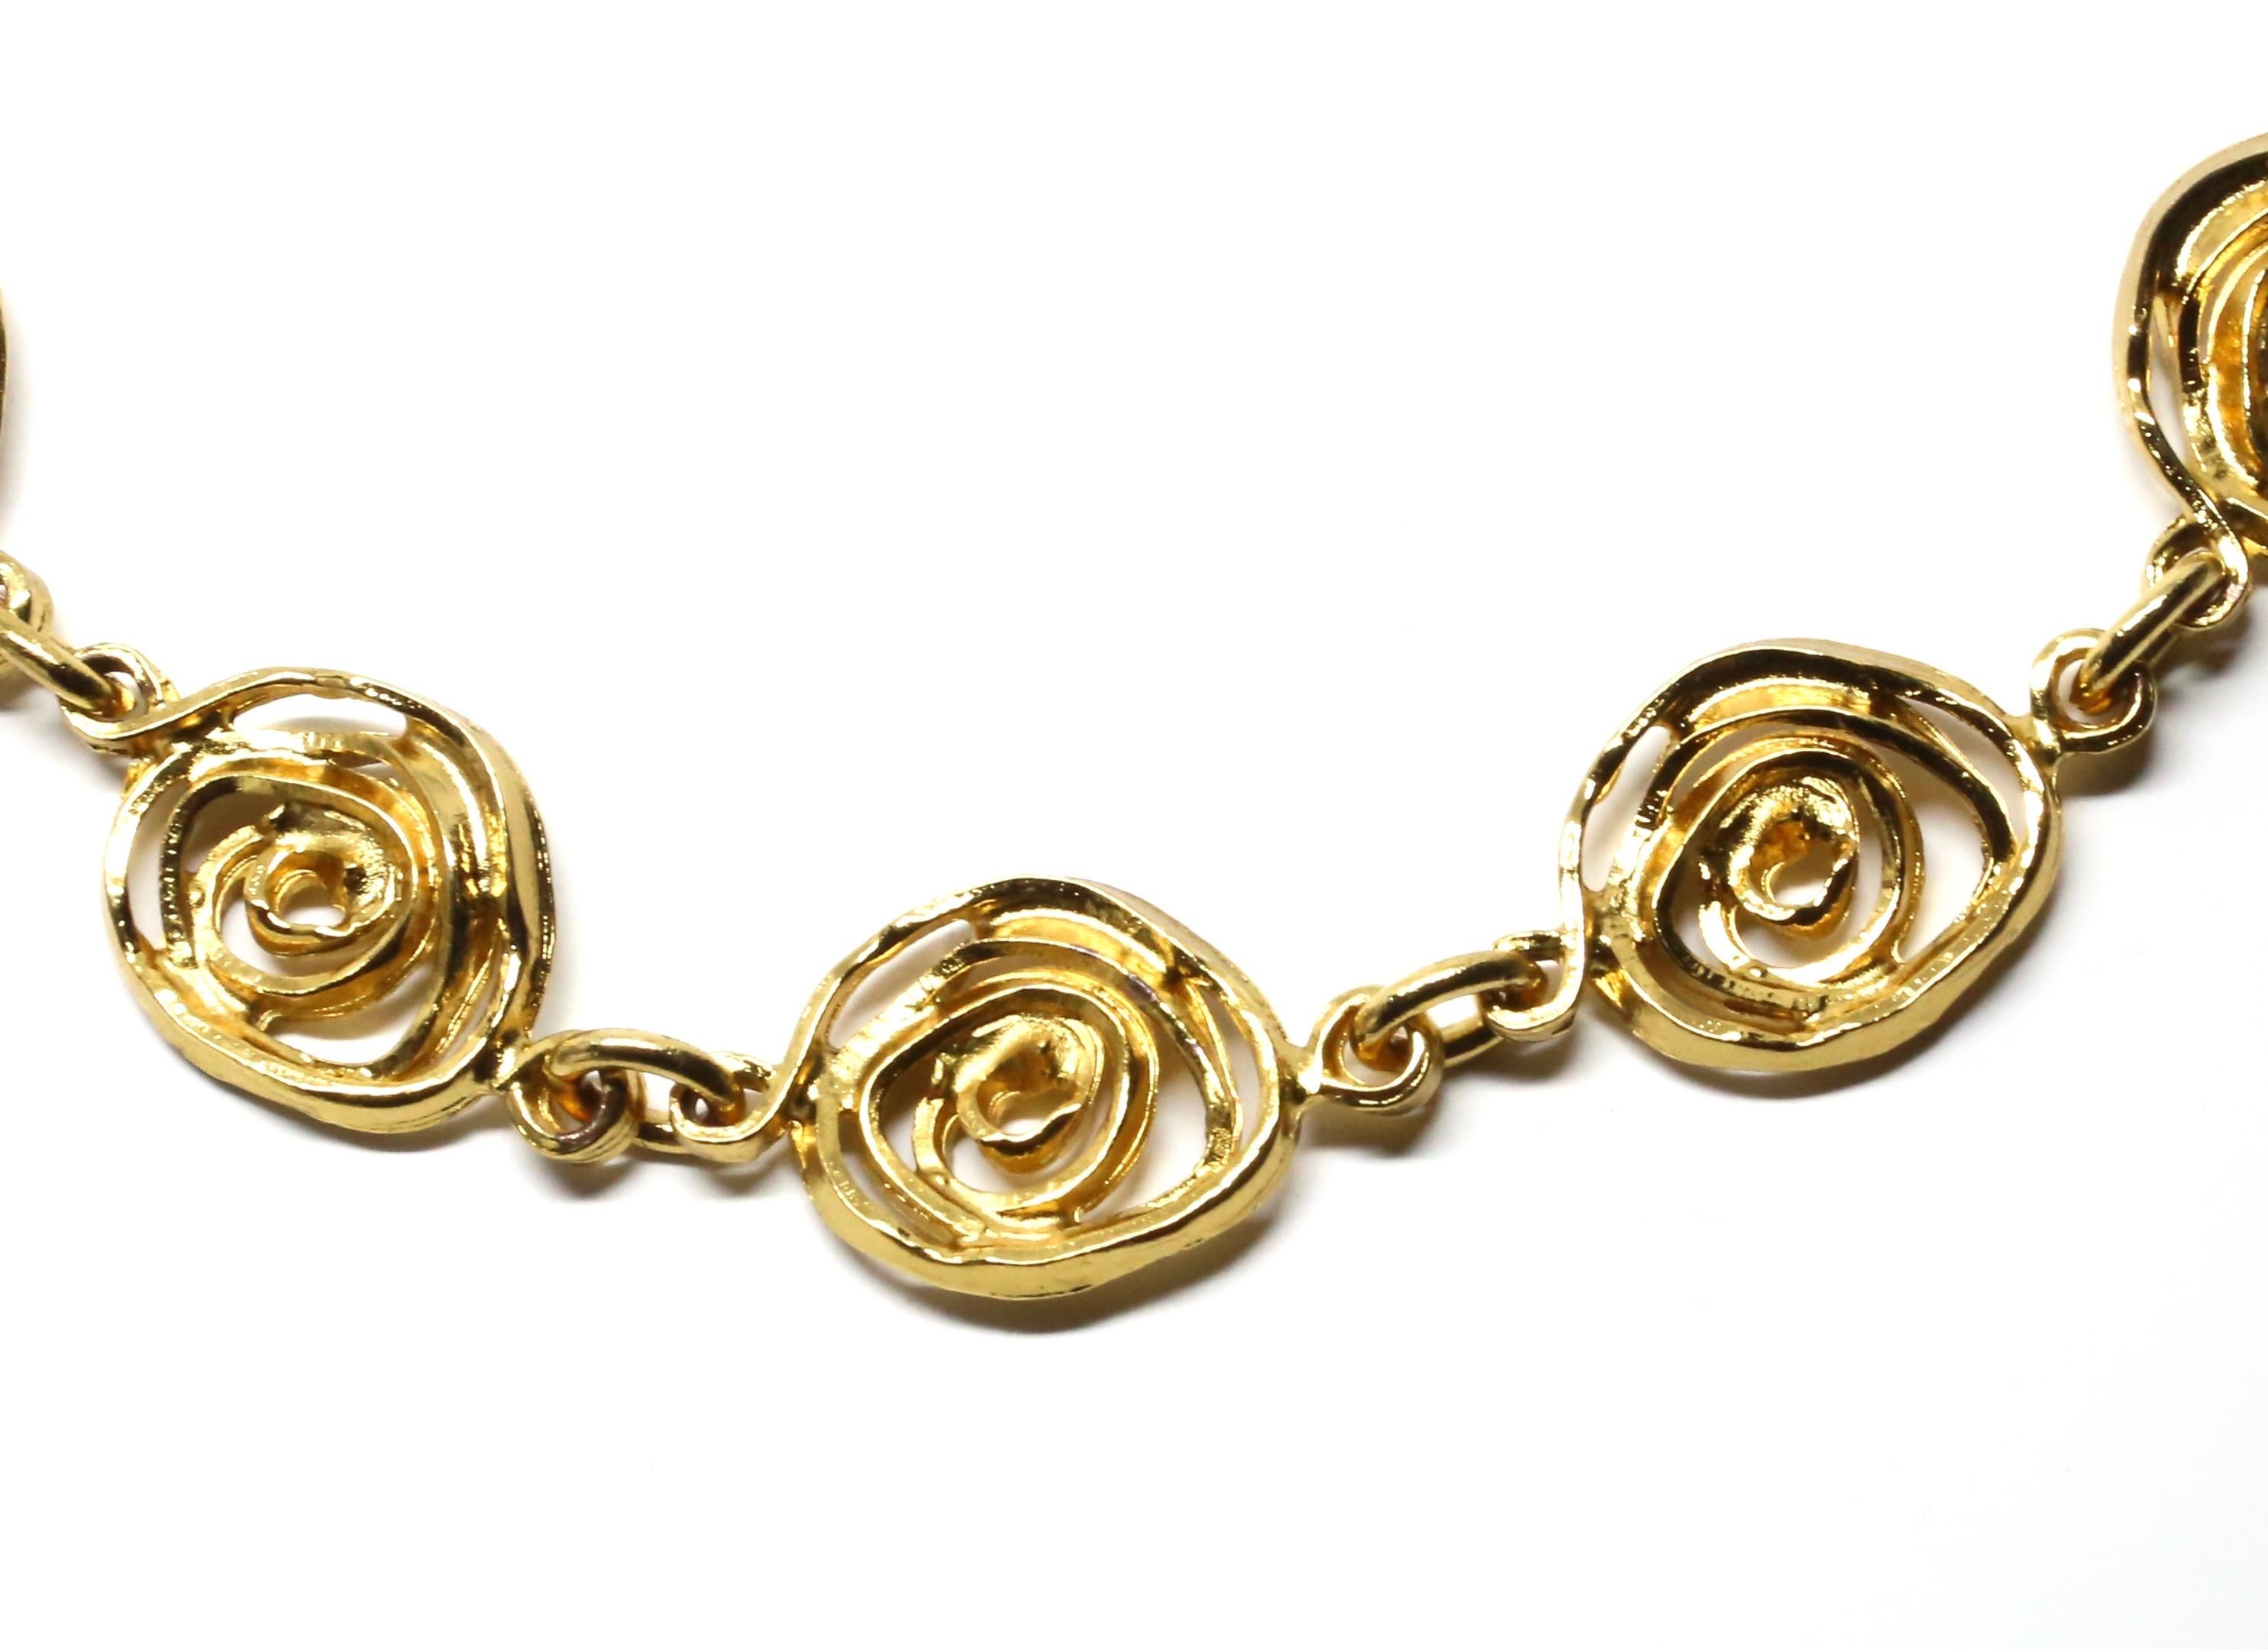 Collier en métal doré avec un motif abstrait de roses conçu par Yves Saint Laurent dans les années 1990. Longueur réglable de 18,5 à 20 pouces. Fermeture à ressort lourd. Fabriqué en France. Excellent état.
